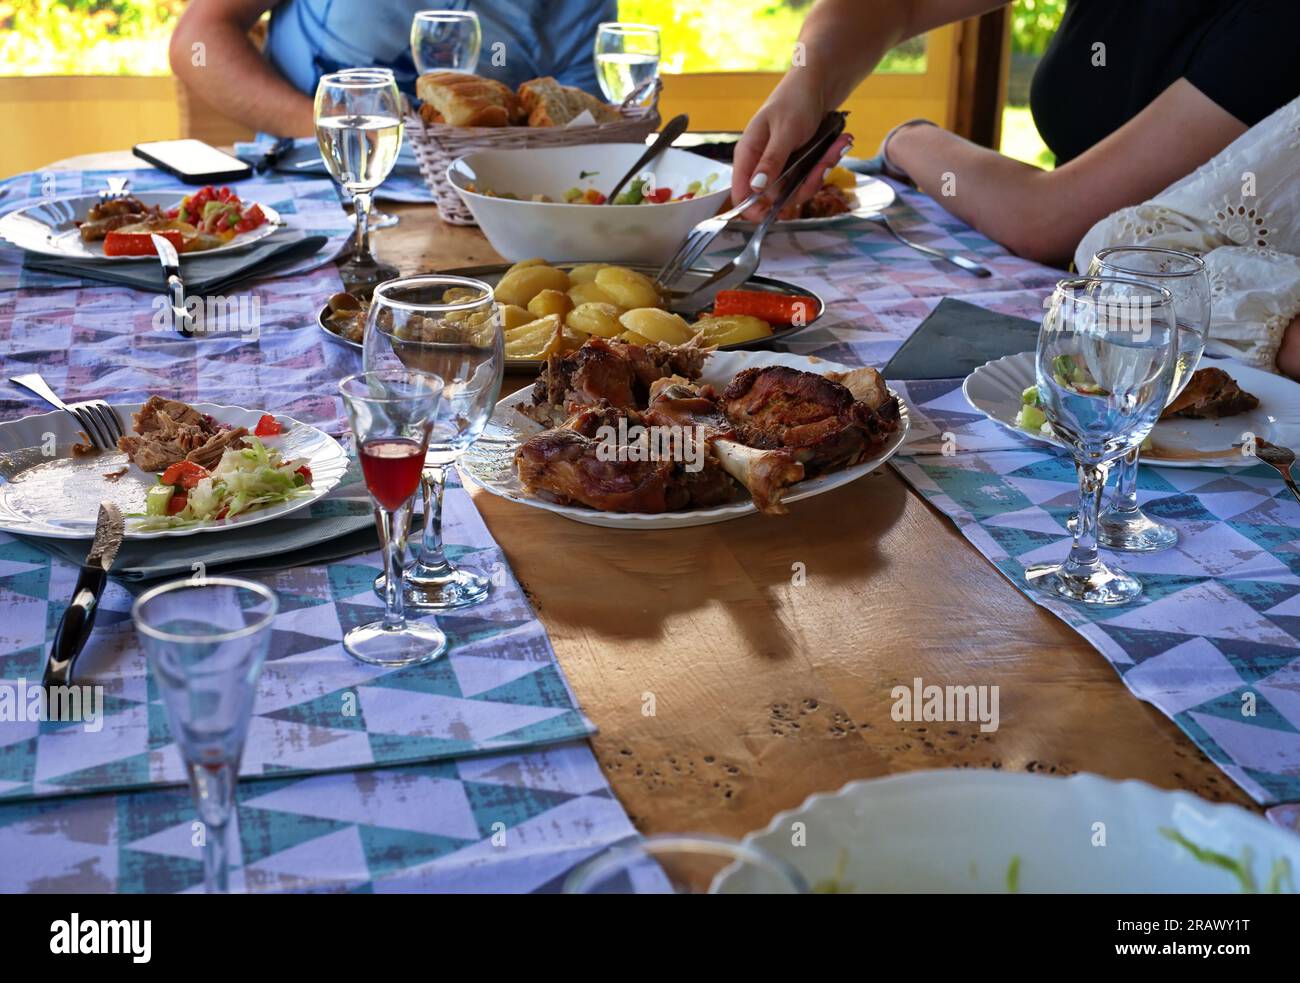 Section médiane des personnes mangeant à la table avec divers aliments et boissons Banque D'Images